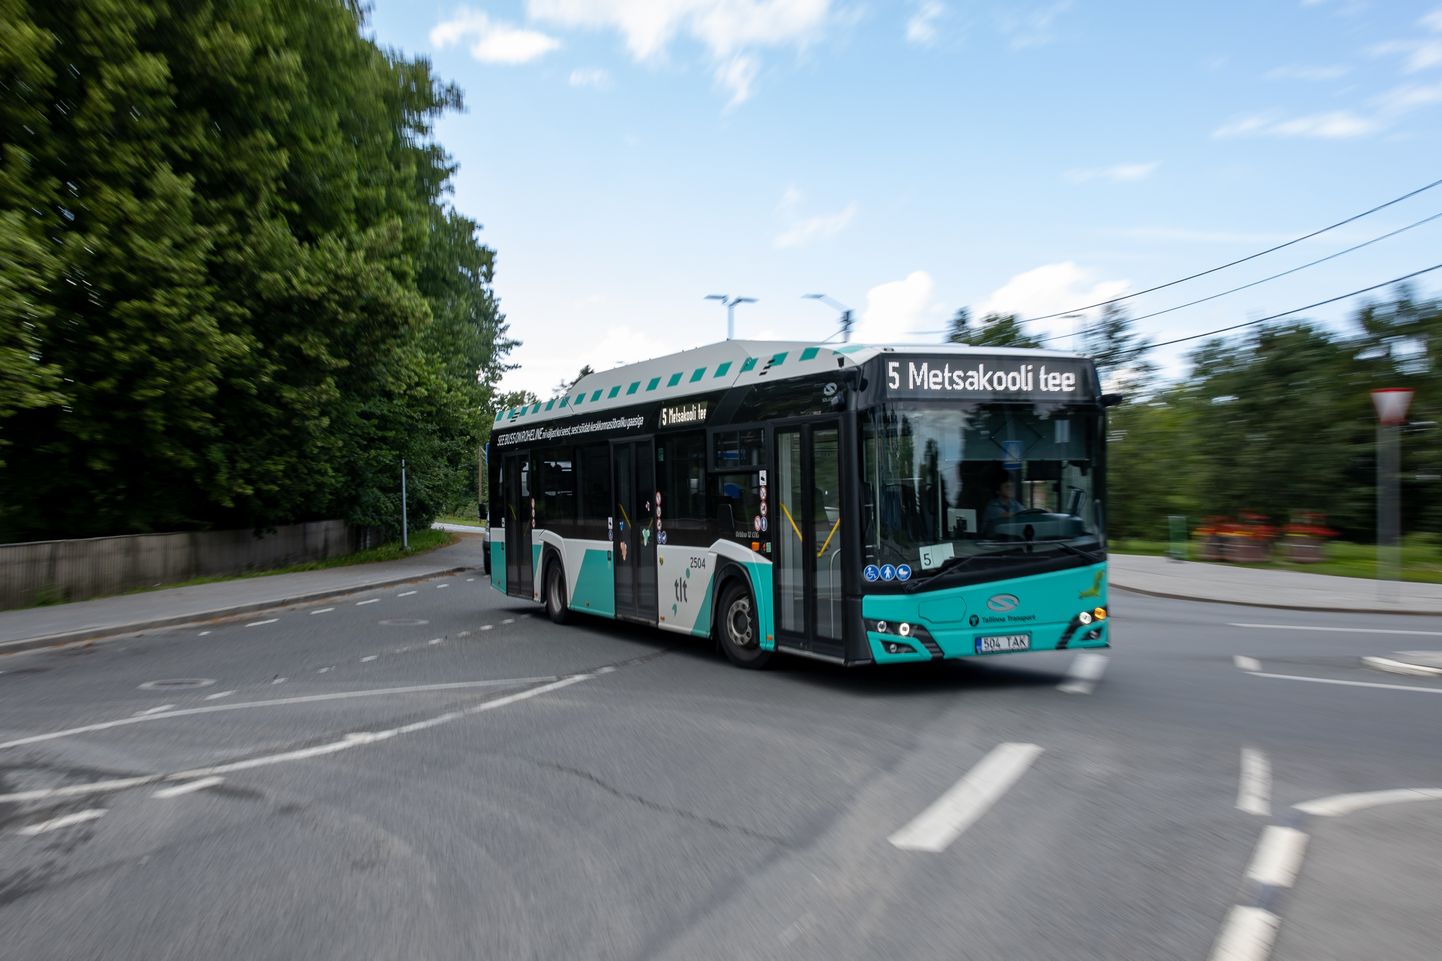 Nädalategijaks on Tallinna liinibuss number 5, mille uus marsruut rikkus paljude Pirita elanike suvepuhkuse